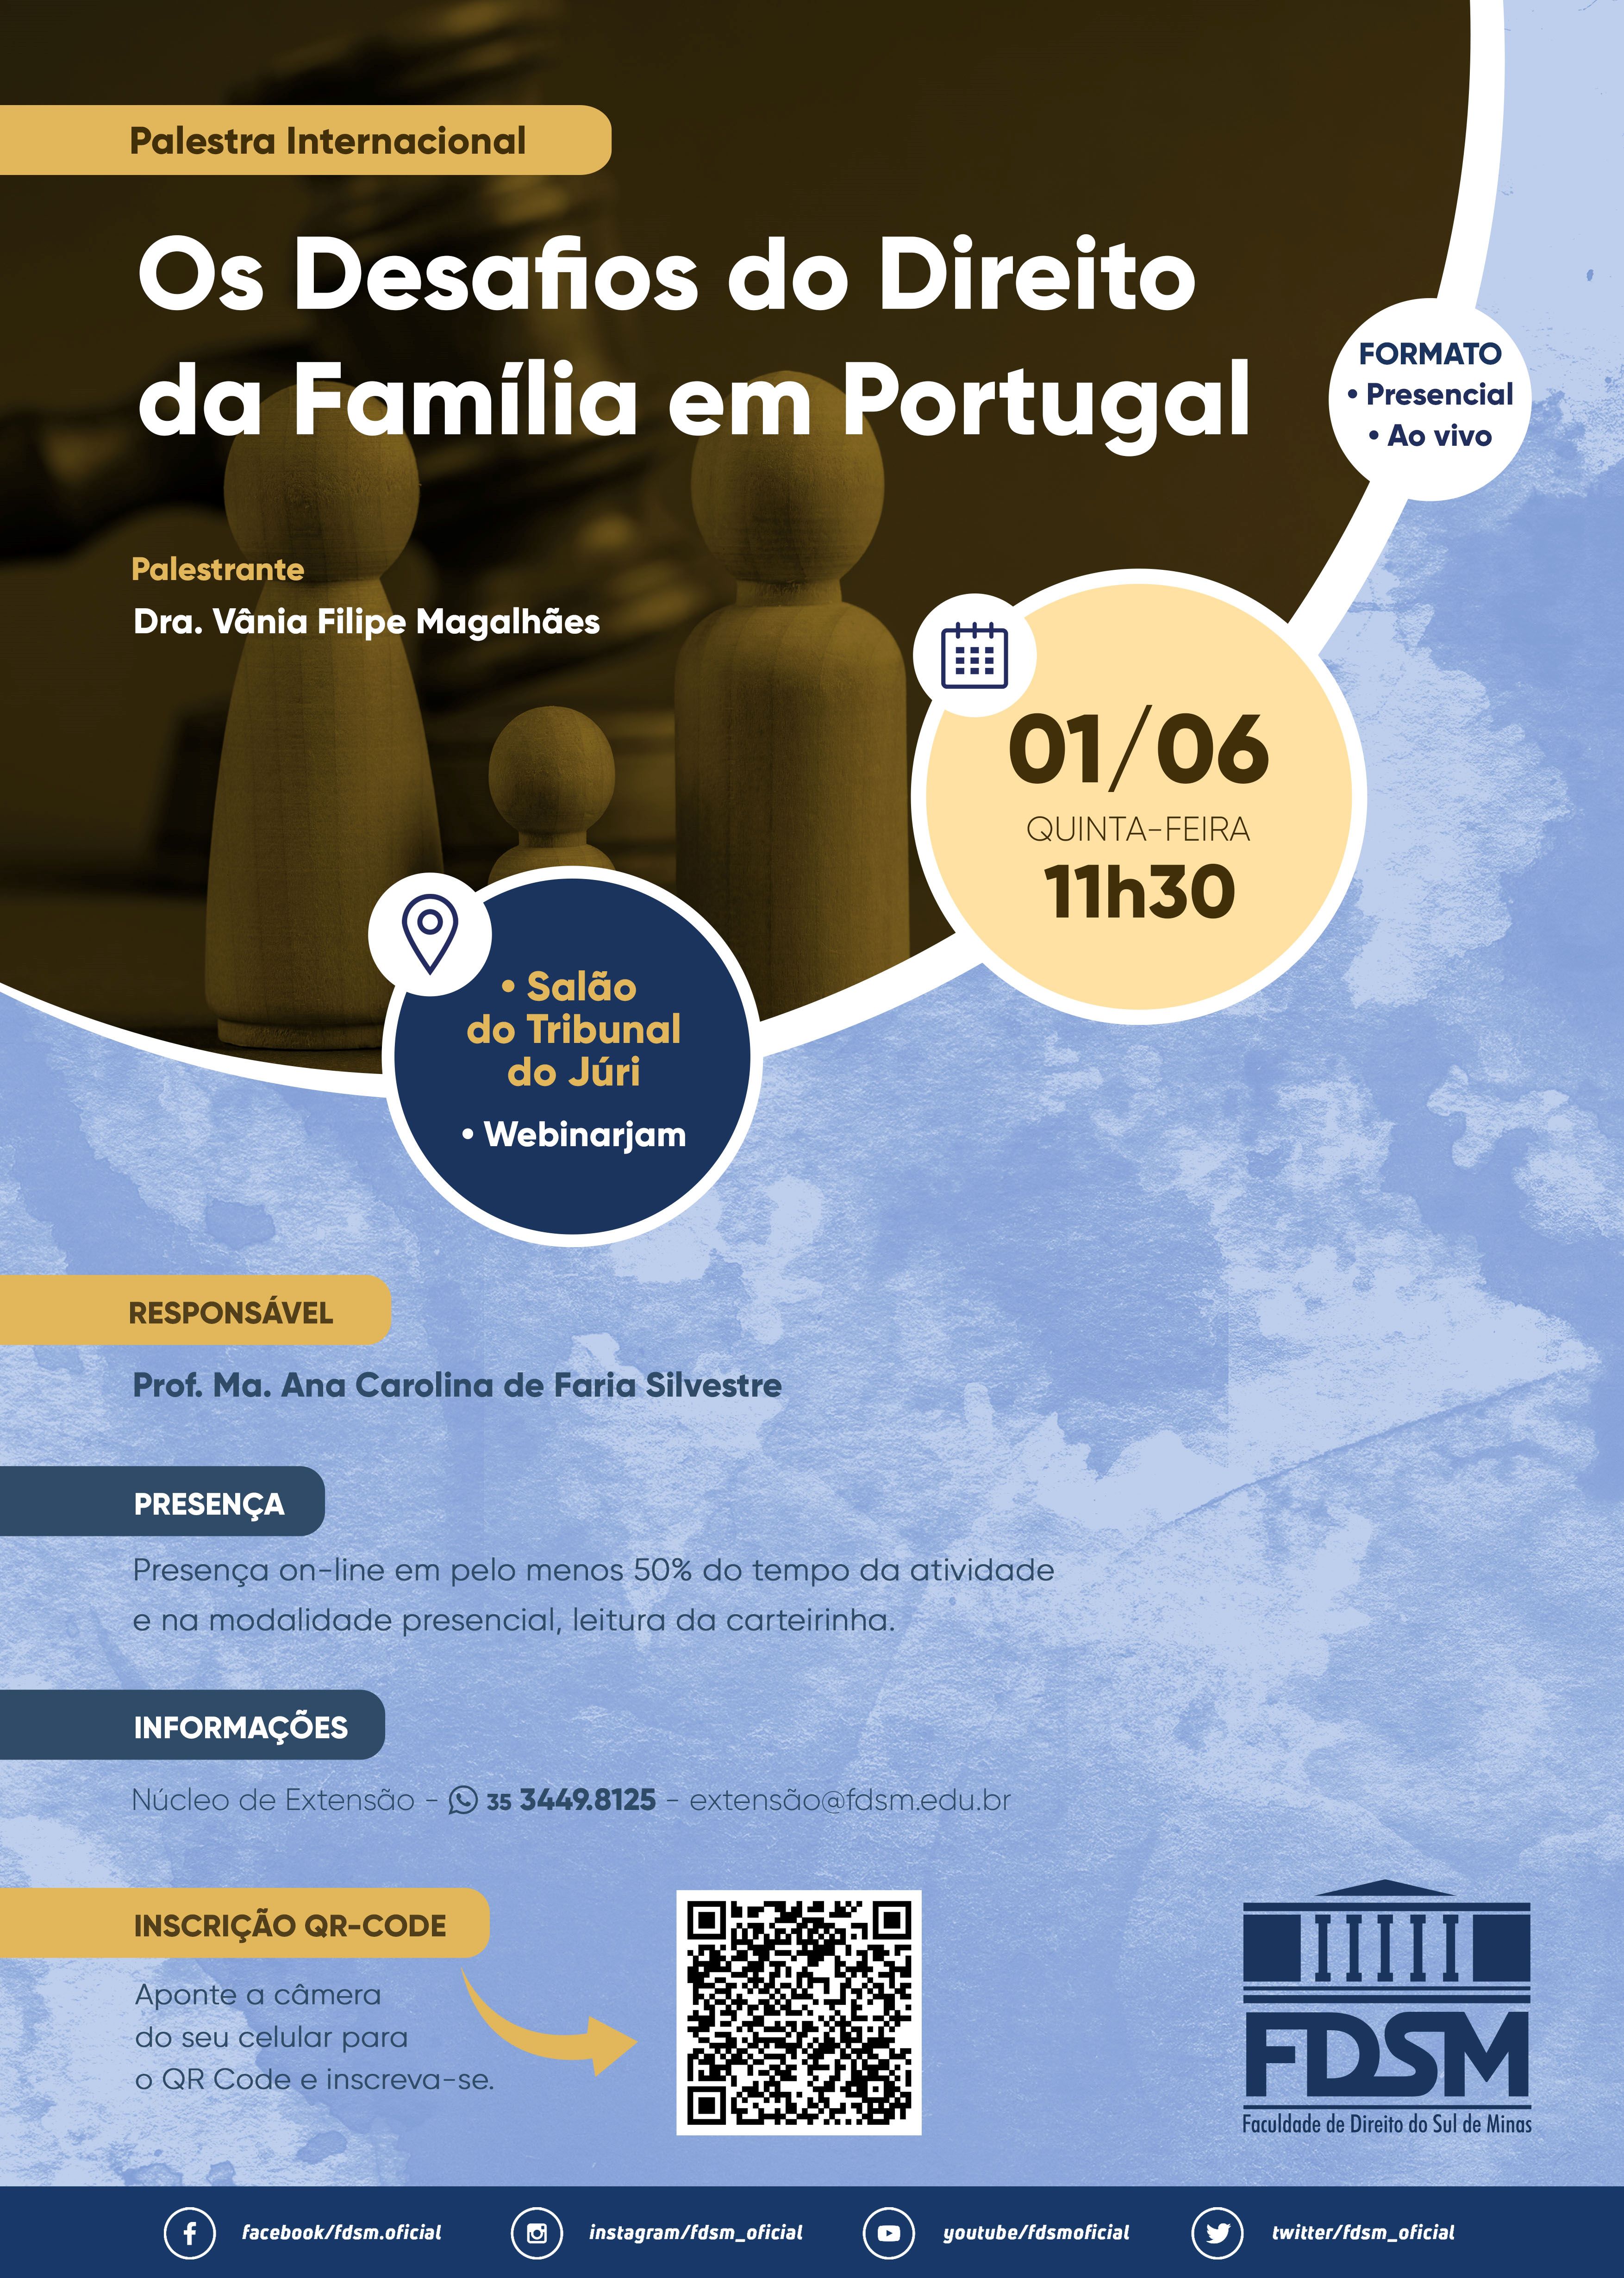 Evento 993 - PALESTRA INTERNACIONAL 'OS DESAFIOS DO DIREITO DA FAMÍLIA EM PORTUGAL'.